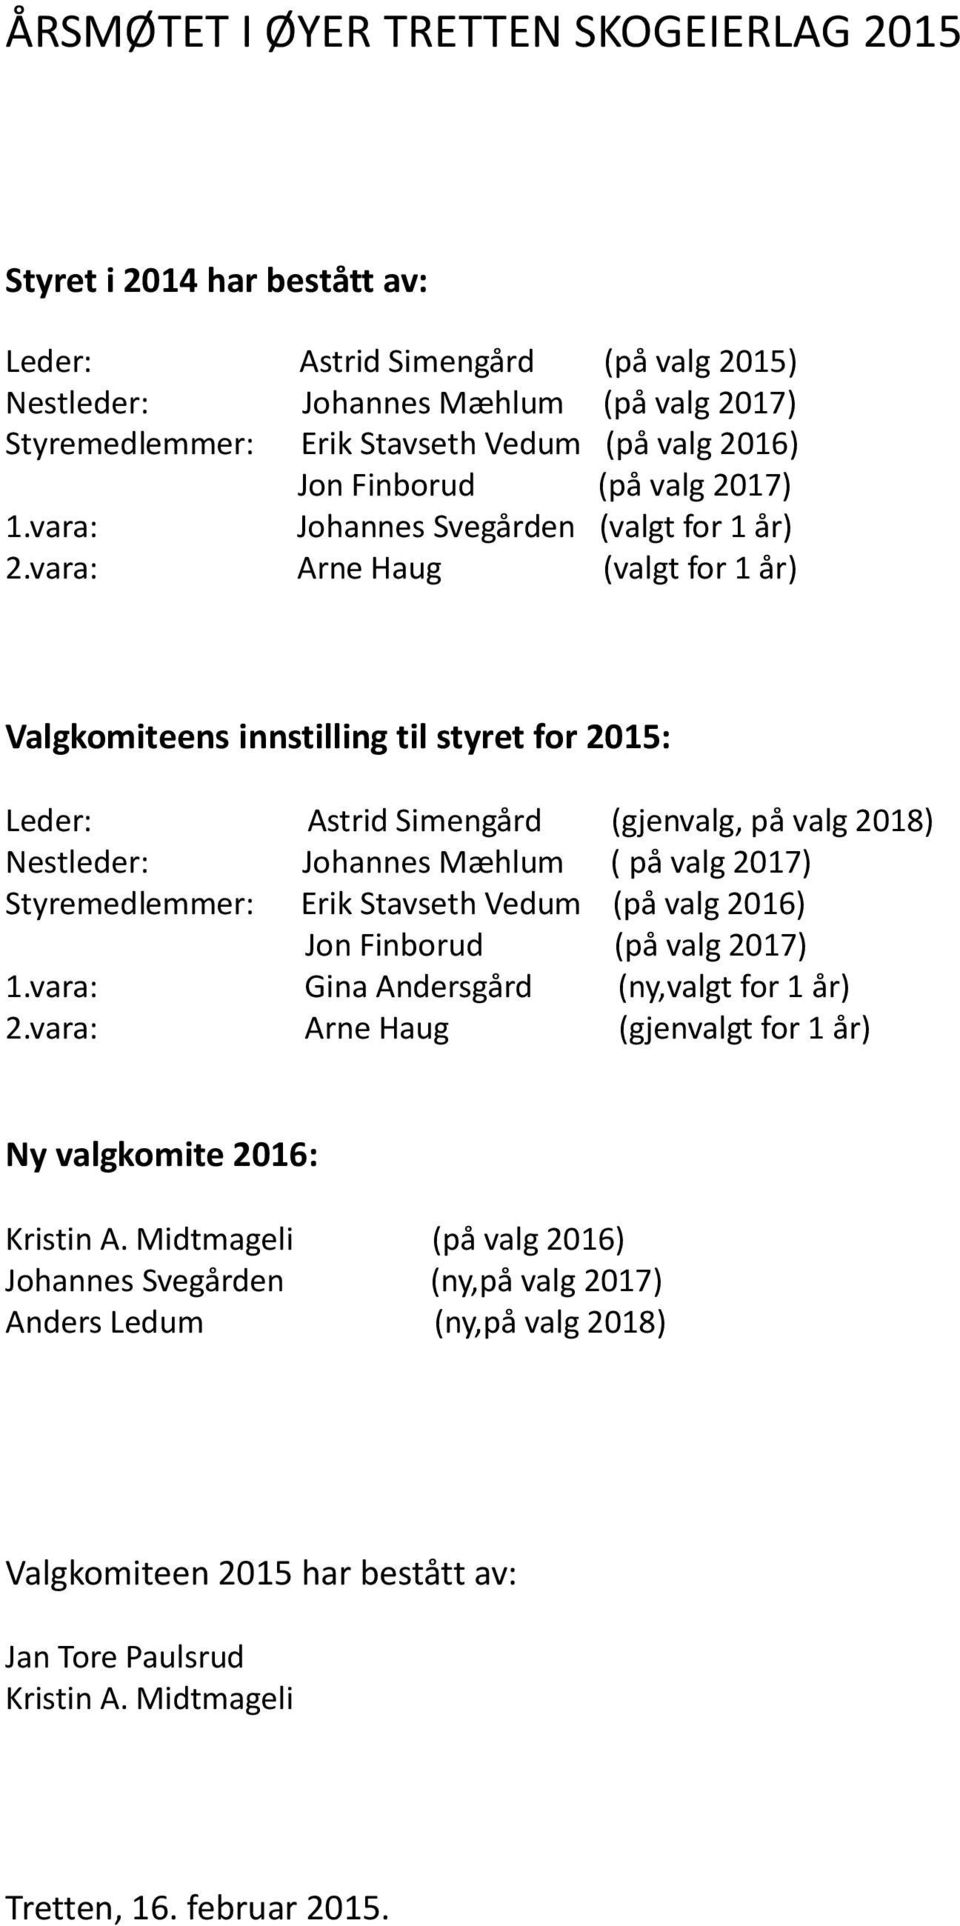 vara: Arne Haug (valgt for 1 år) Valgkomiteens innstilling til styret for 2015: Leder: Astrid Simengård (gjenvalg, på valg 2018) Nestleder: Johannes Mæhlum ( på valg 2017) Styremedlemmer: Erik